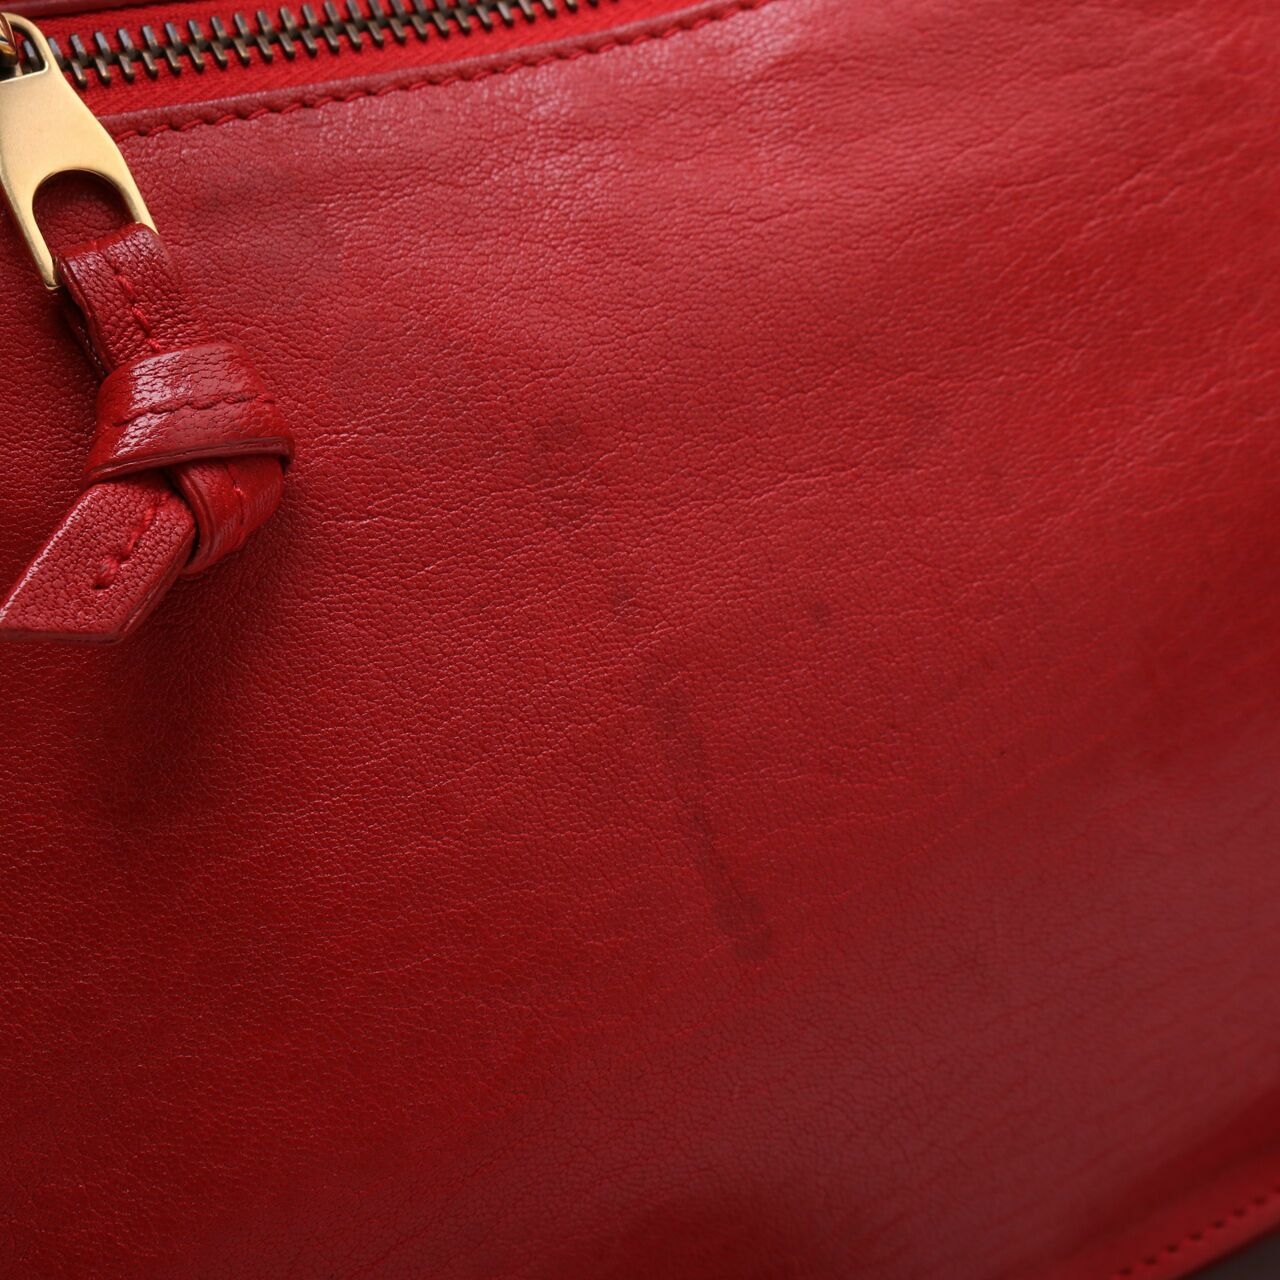 Proenza Schouler Red Satchel Bag 